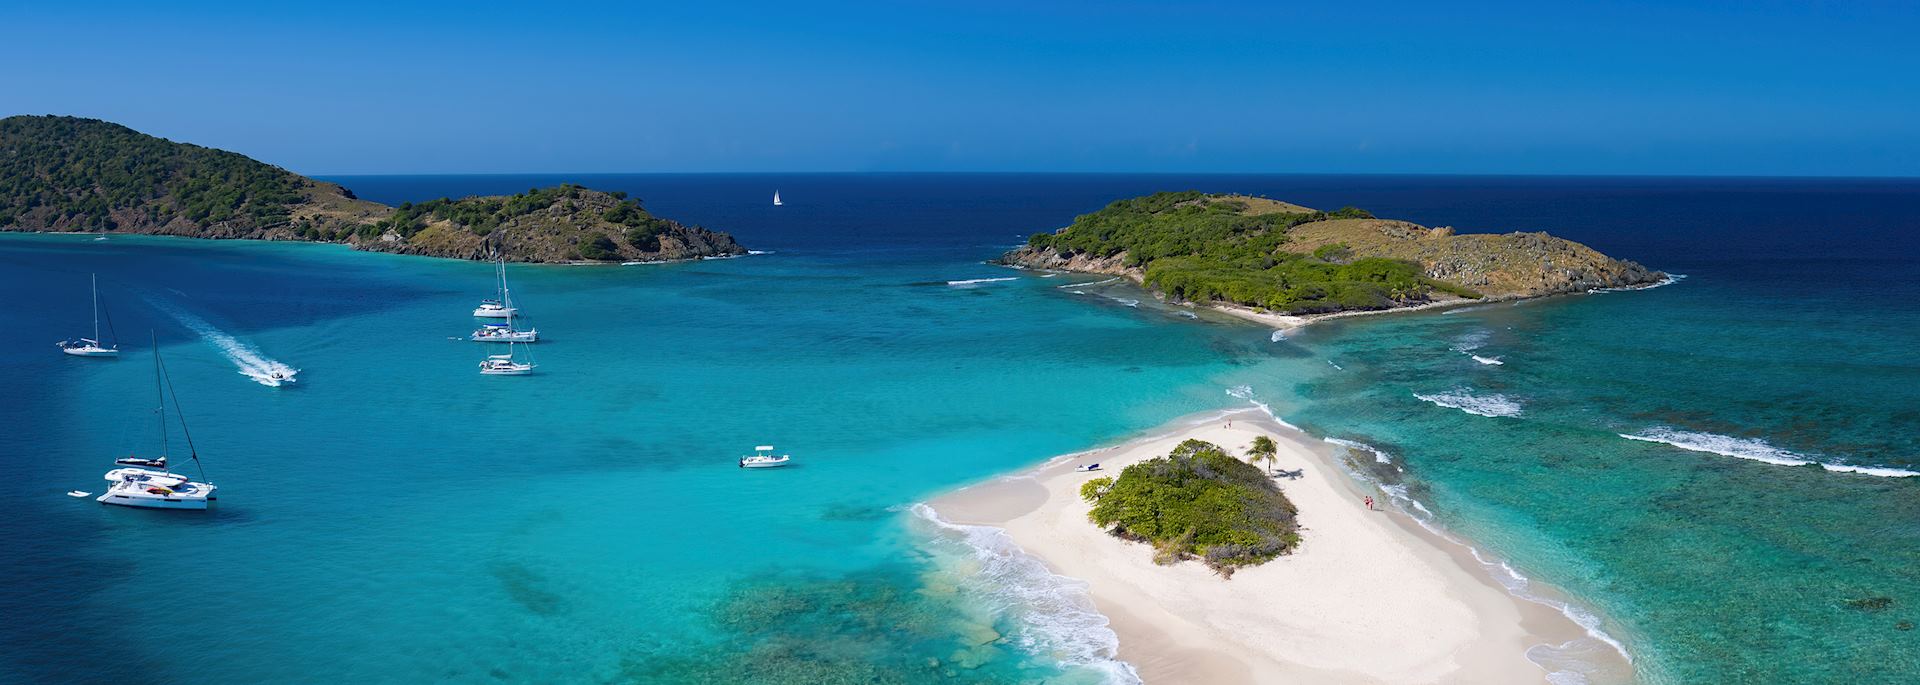 Sandy Spit Island in the British Virgin Islands